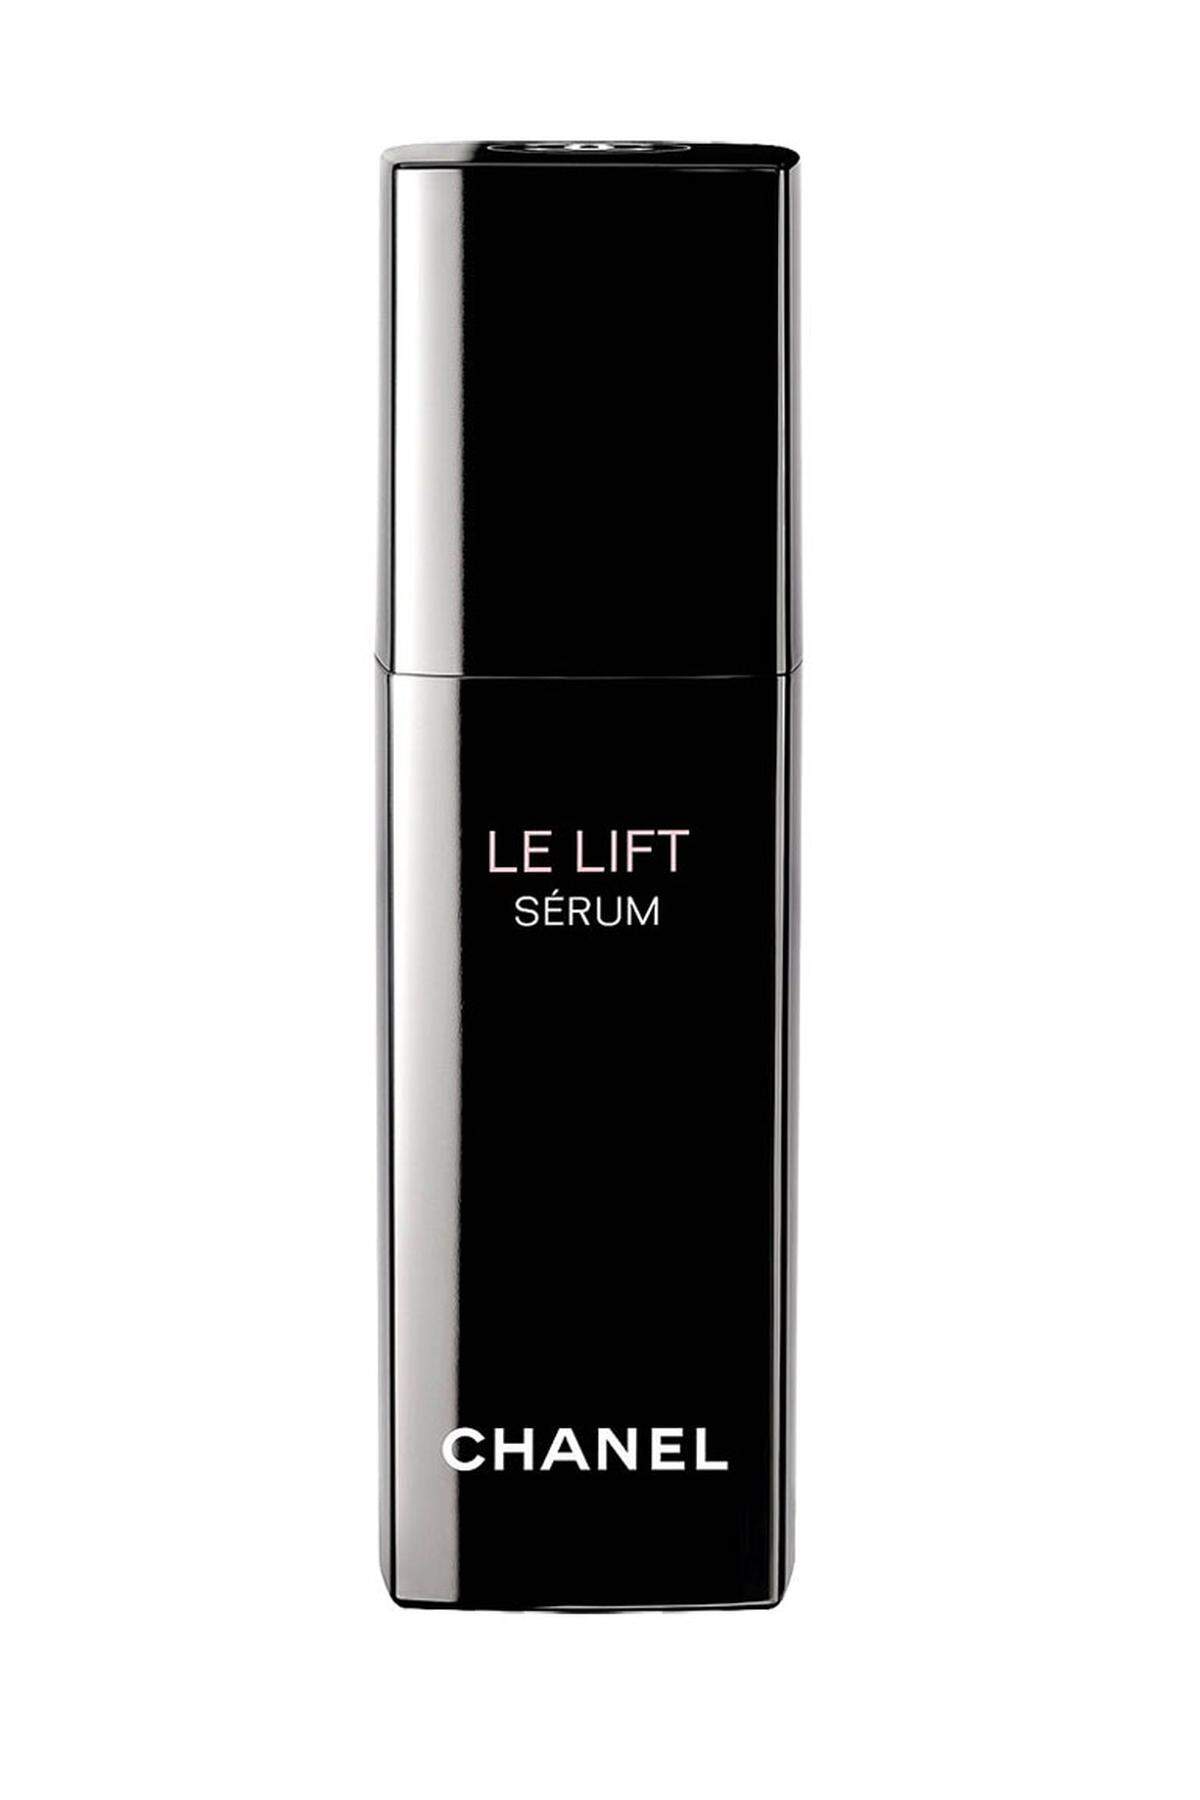 Auch aus der Le Lift -Kollektion von Chanel gibt es nun ein Serum, um 122 Euro.